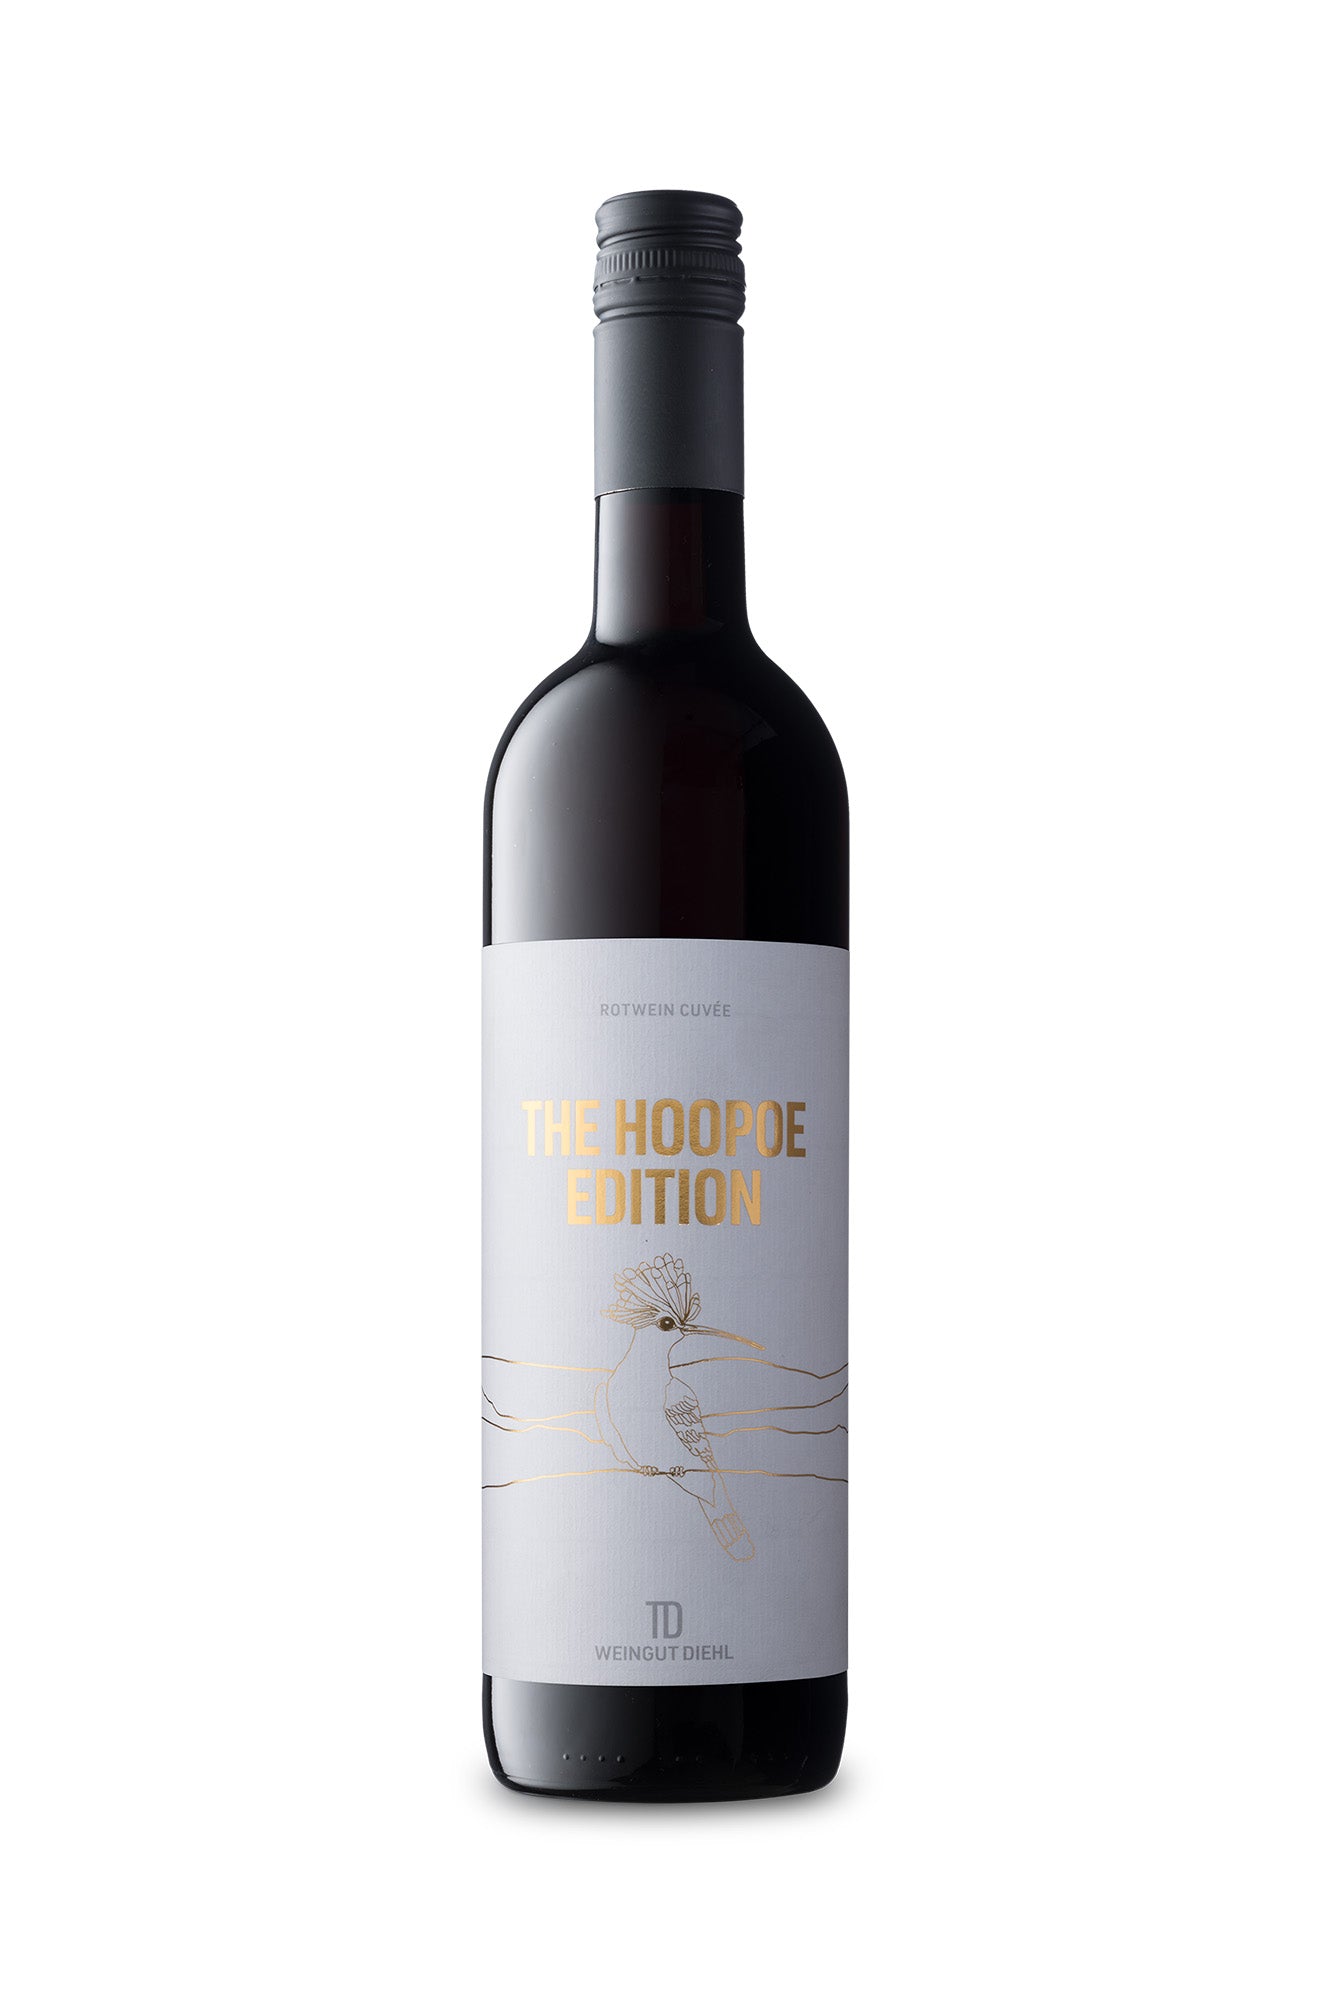 2021 Rotwein Cuvée trocken – Weingut Diehl